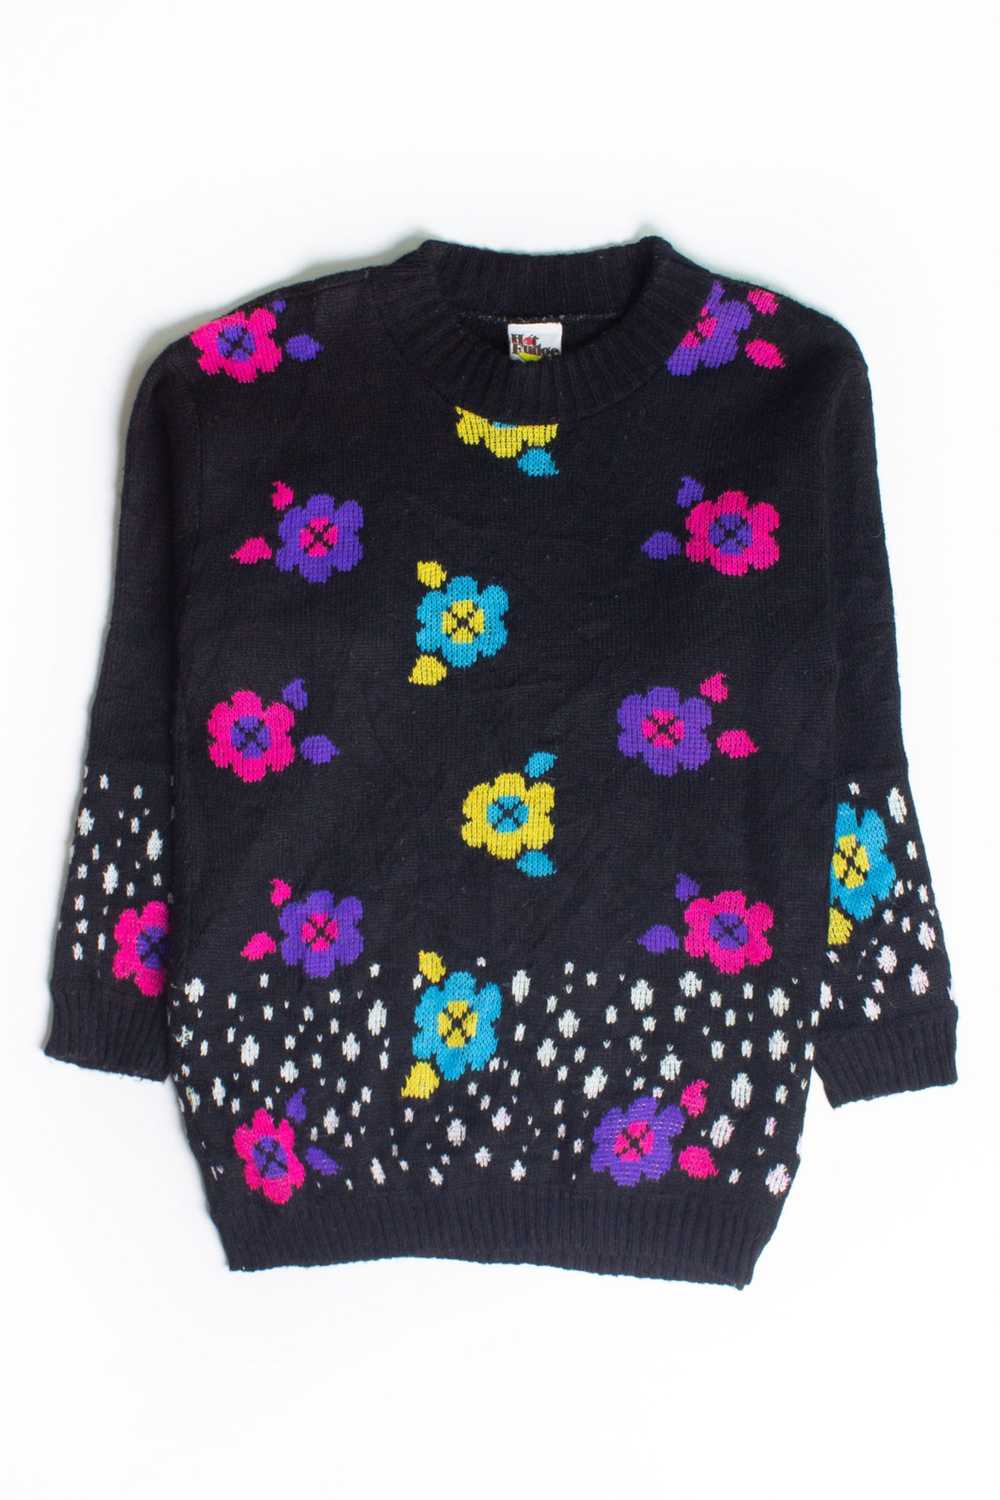 Vintage Black Floral Sweater (1980s) - image 2